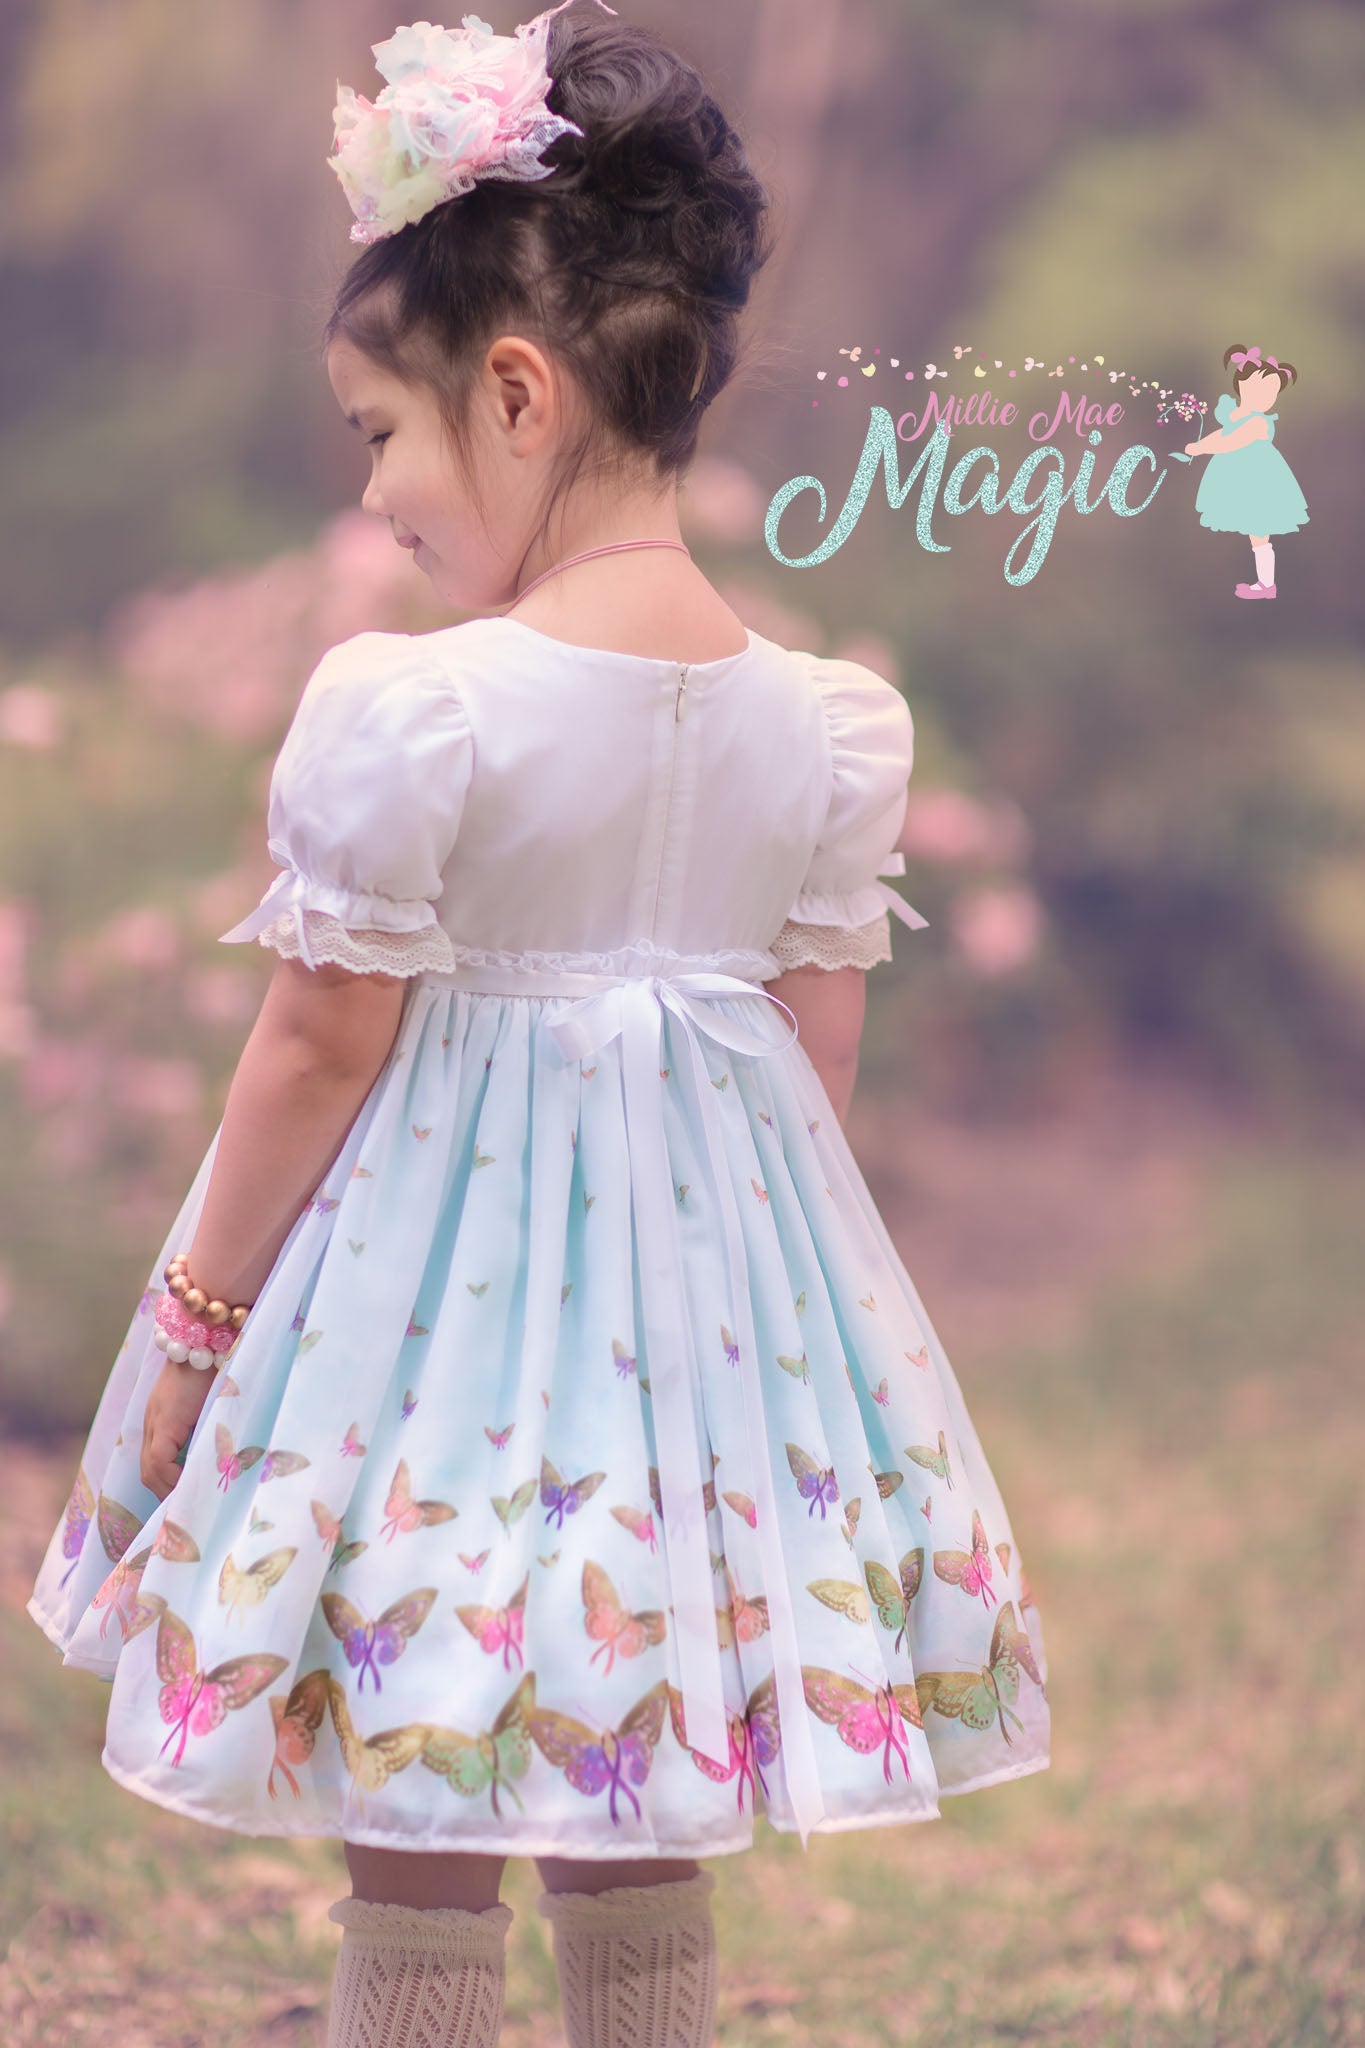 Addi's Magic Dress